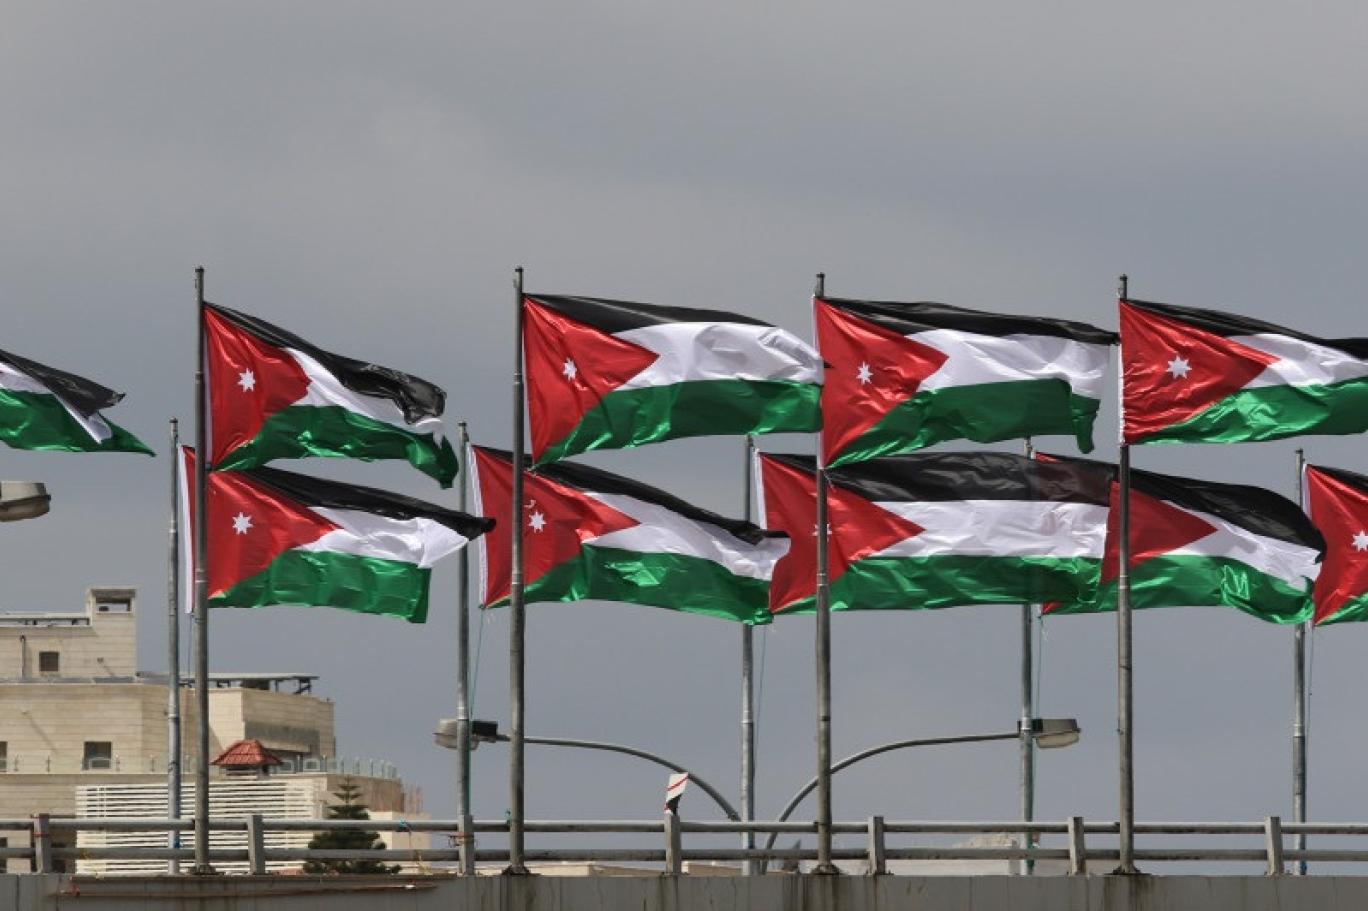 انتقادات لحال الحريات في الأردن والحكومة تتحدث عن إصلاح سياسي | اندبندنت عربية